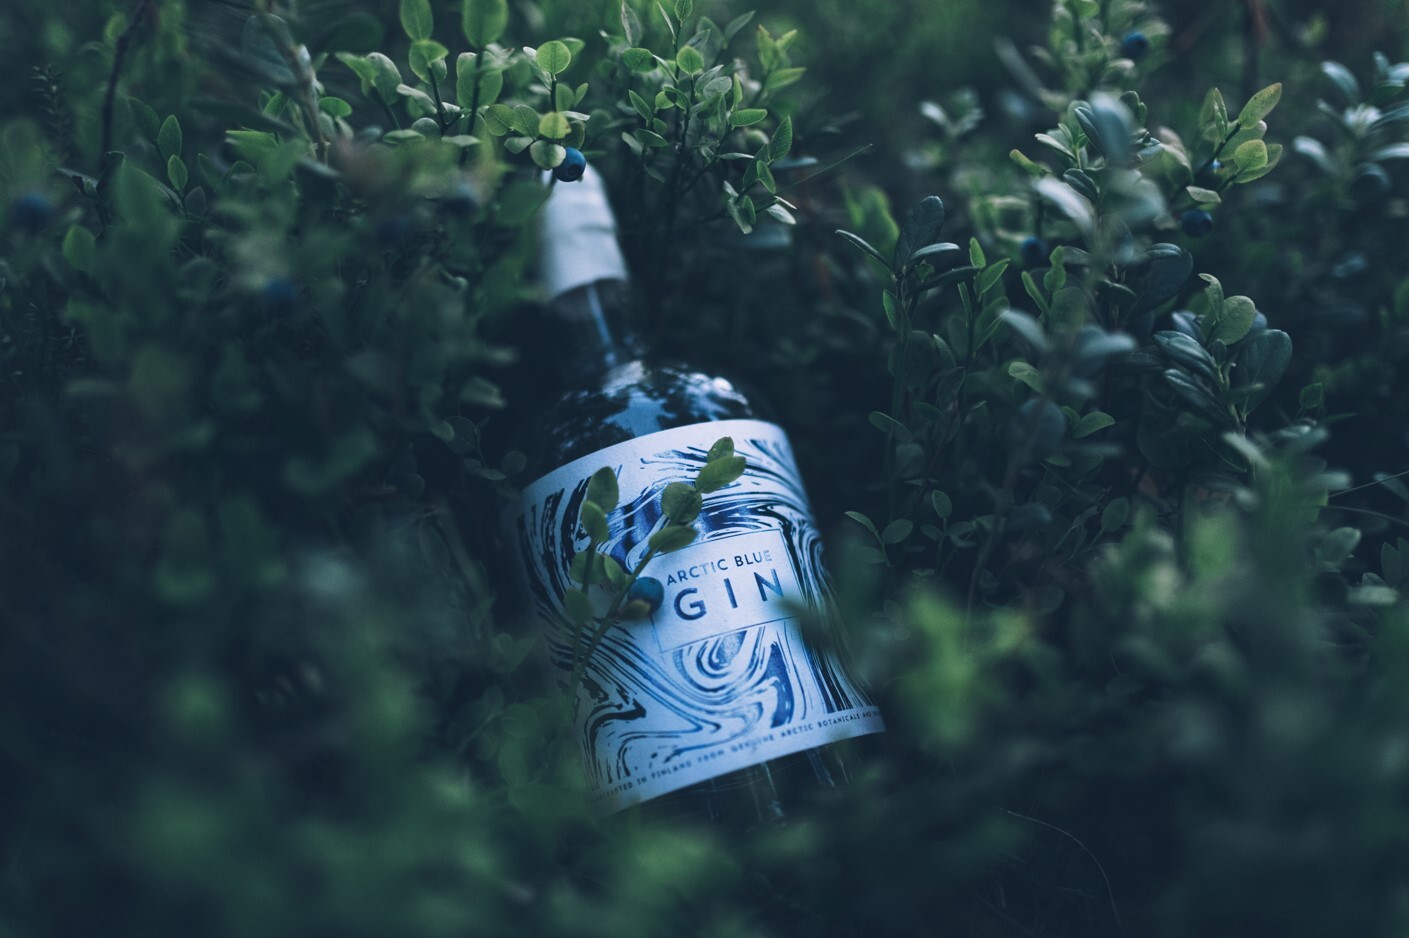 フィンランドの大自然をボトルに詰め込んだプレミアムジン
「Arctic Blue Gin -アークティック ブルー ジン-」
取り扱い開始！